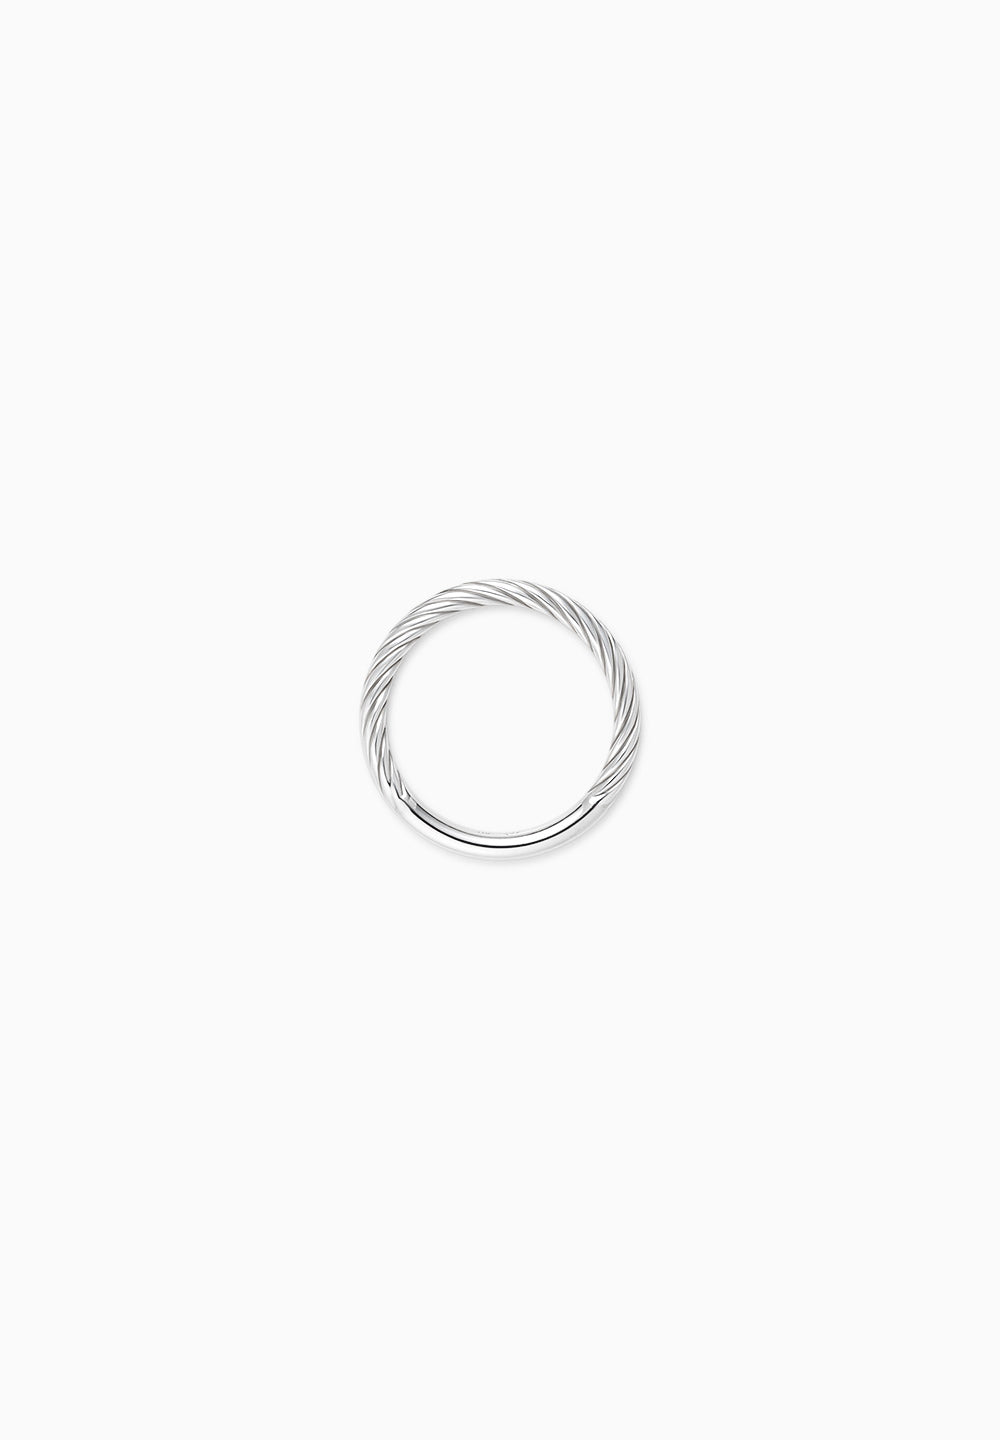 卡拉瓦乔|卡拉瓦乔|戒指|纯银|φ2.0mm